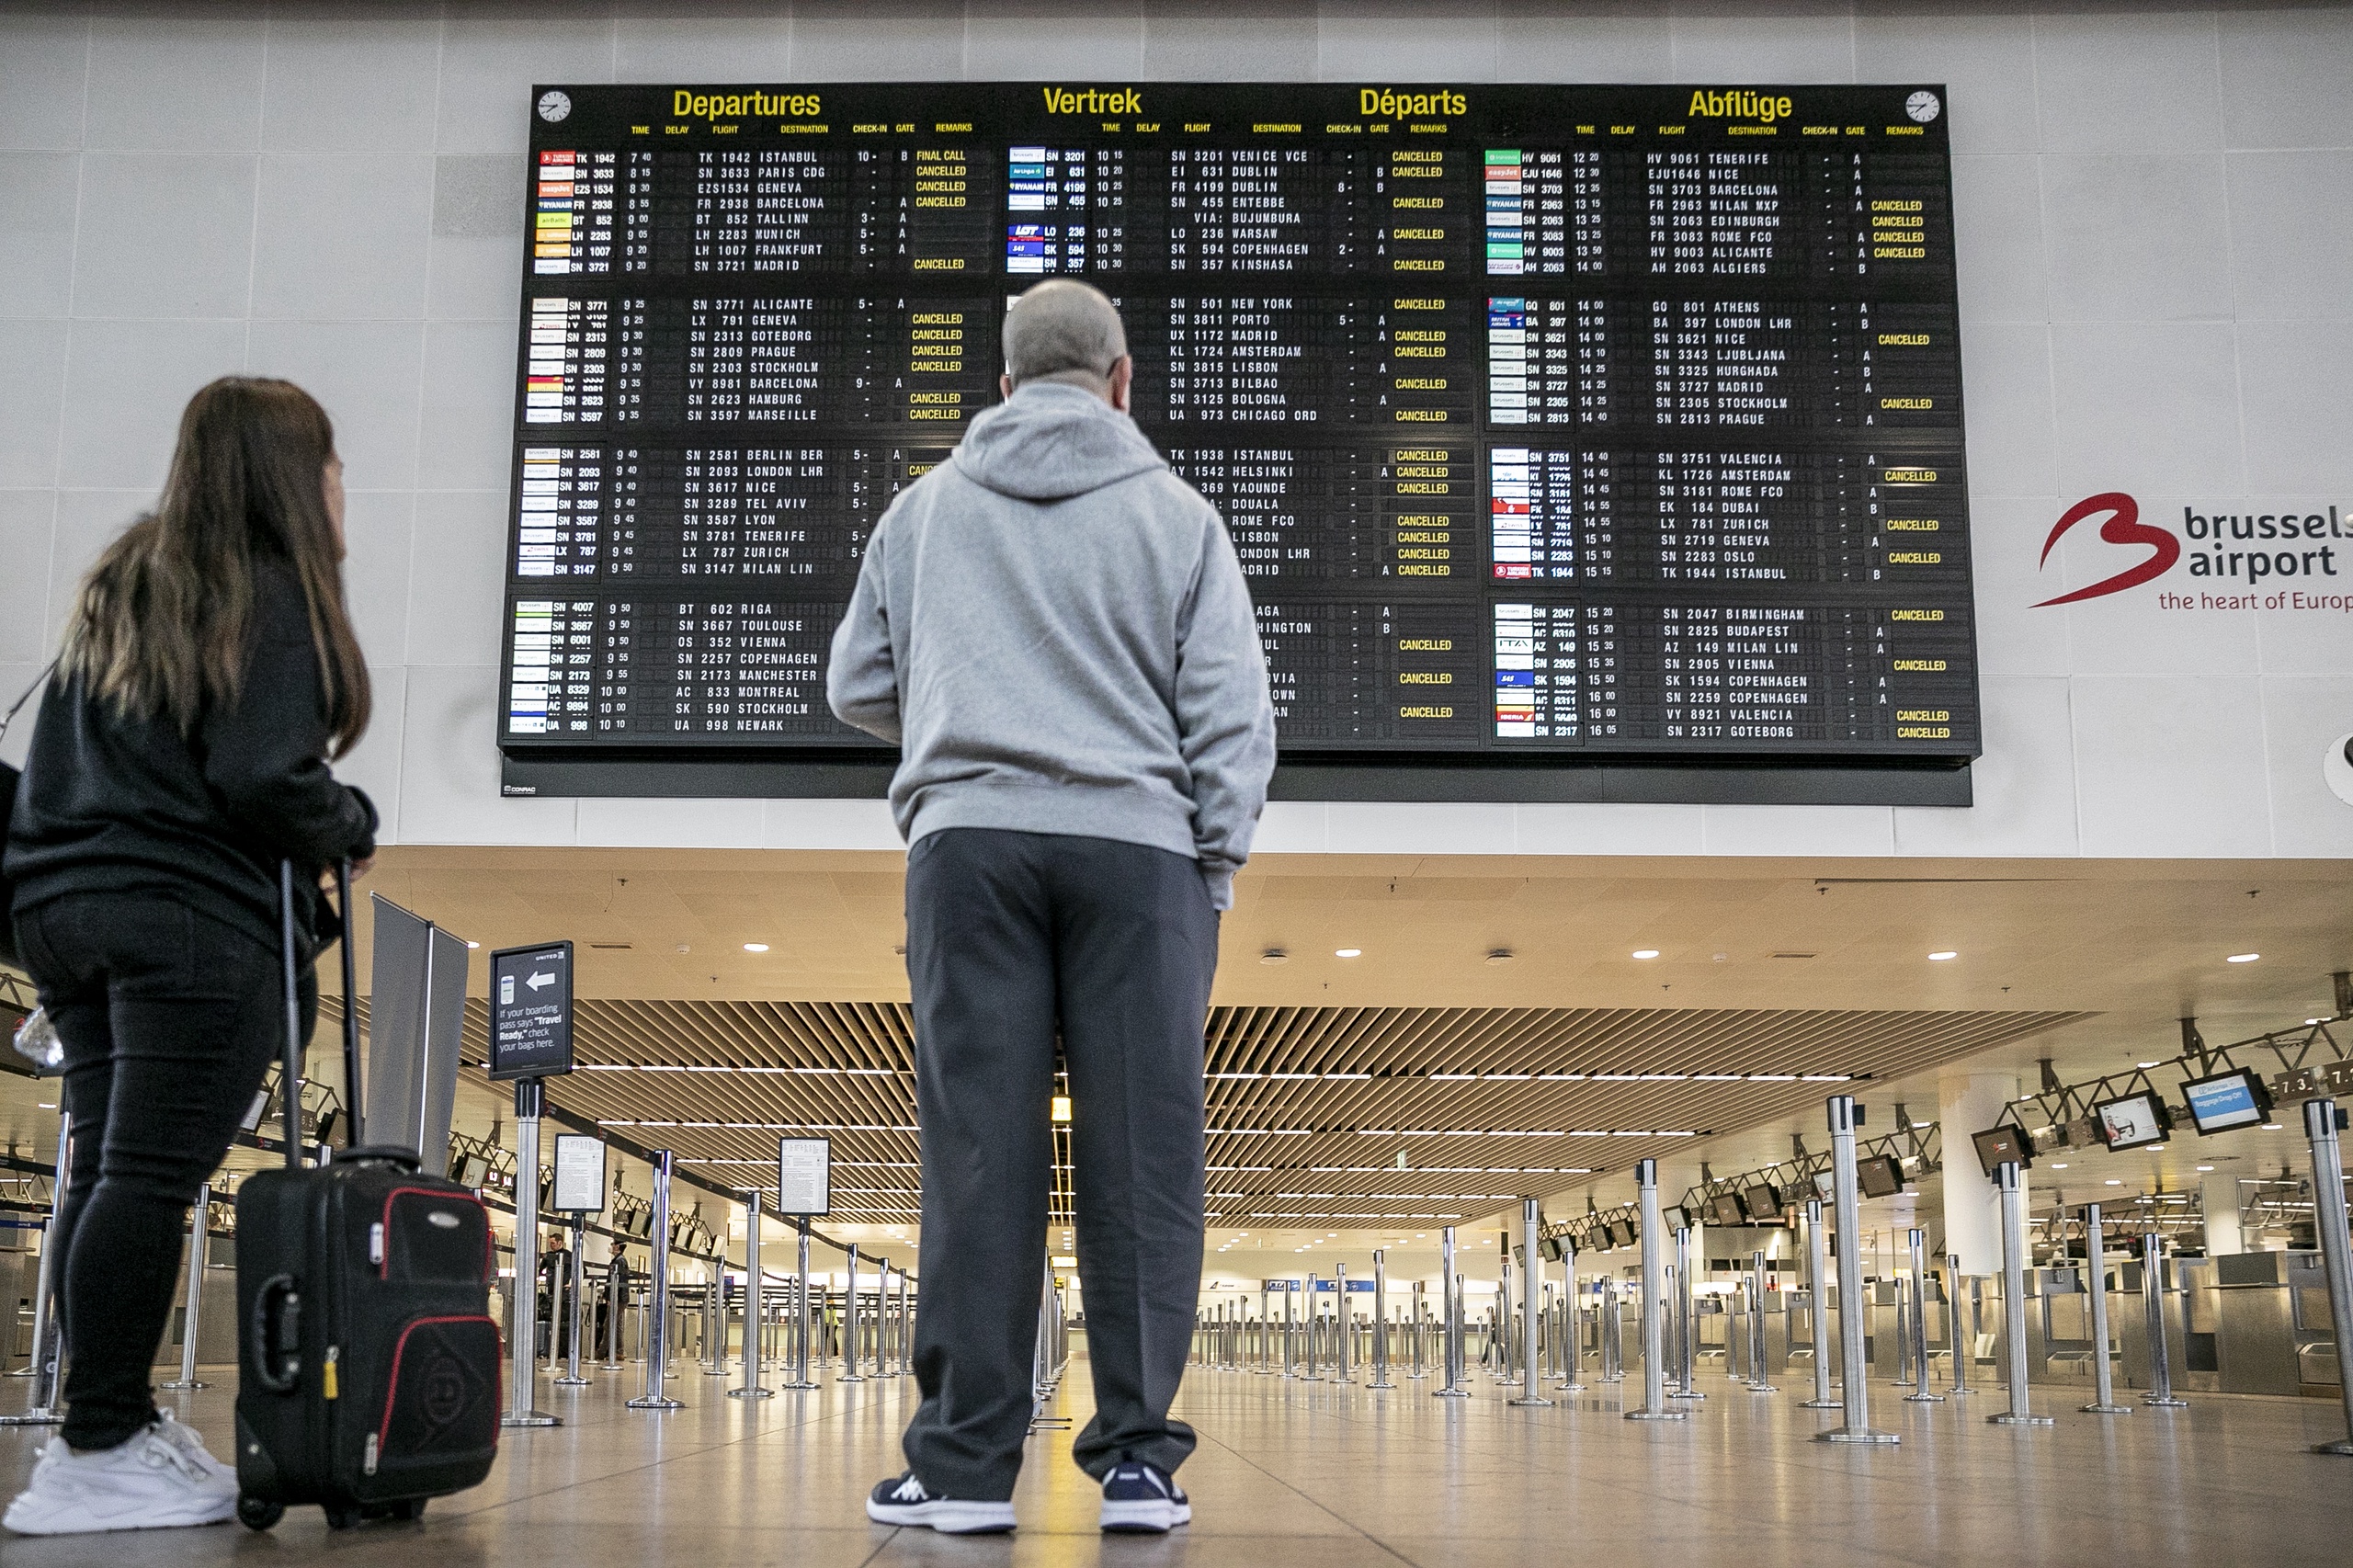 Brussel Airport heeft meer dan 200 vluchten geannuleerd vanwege de nationale stakingsdag in België. 